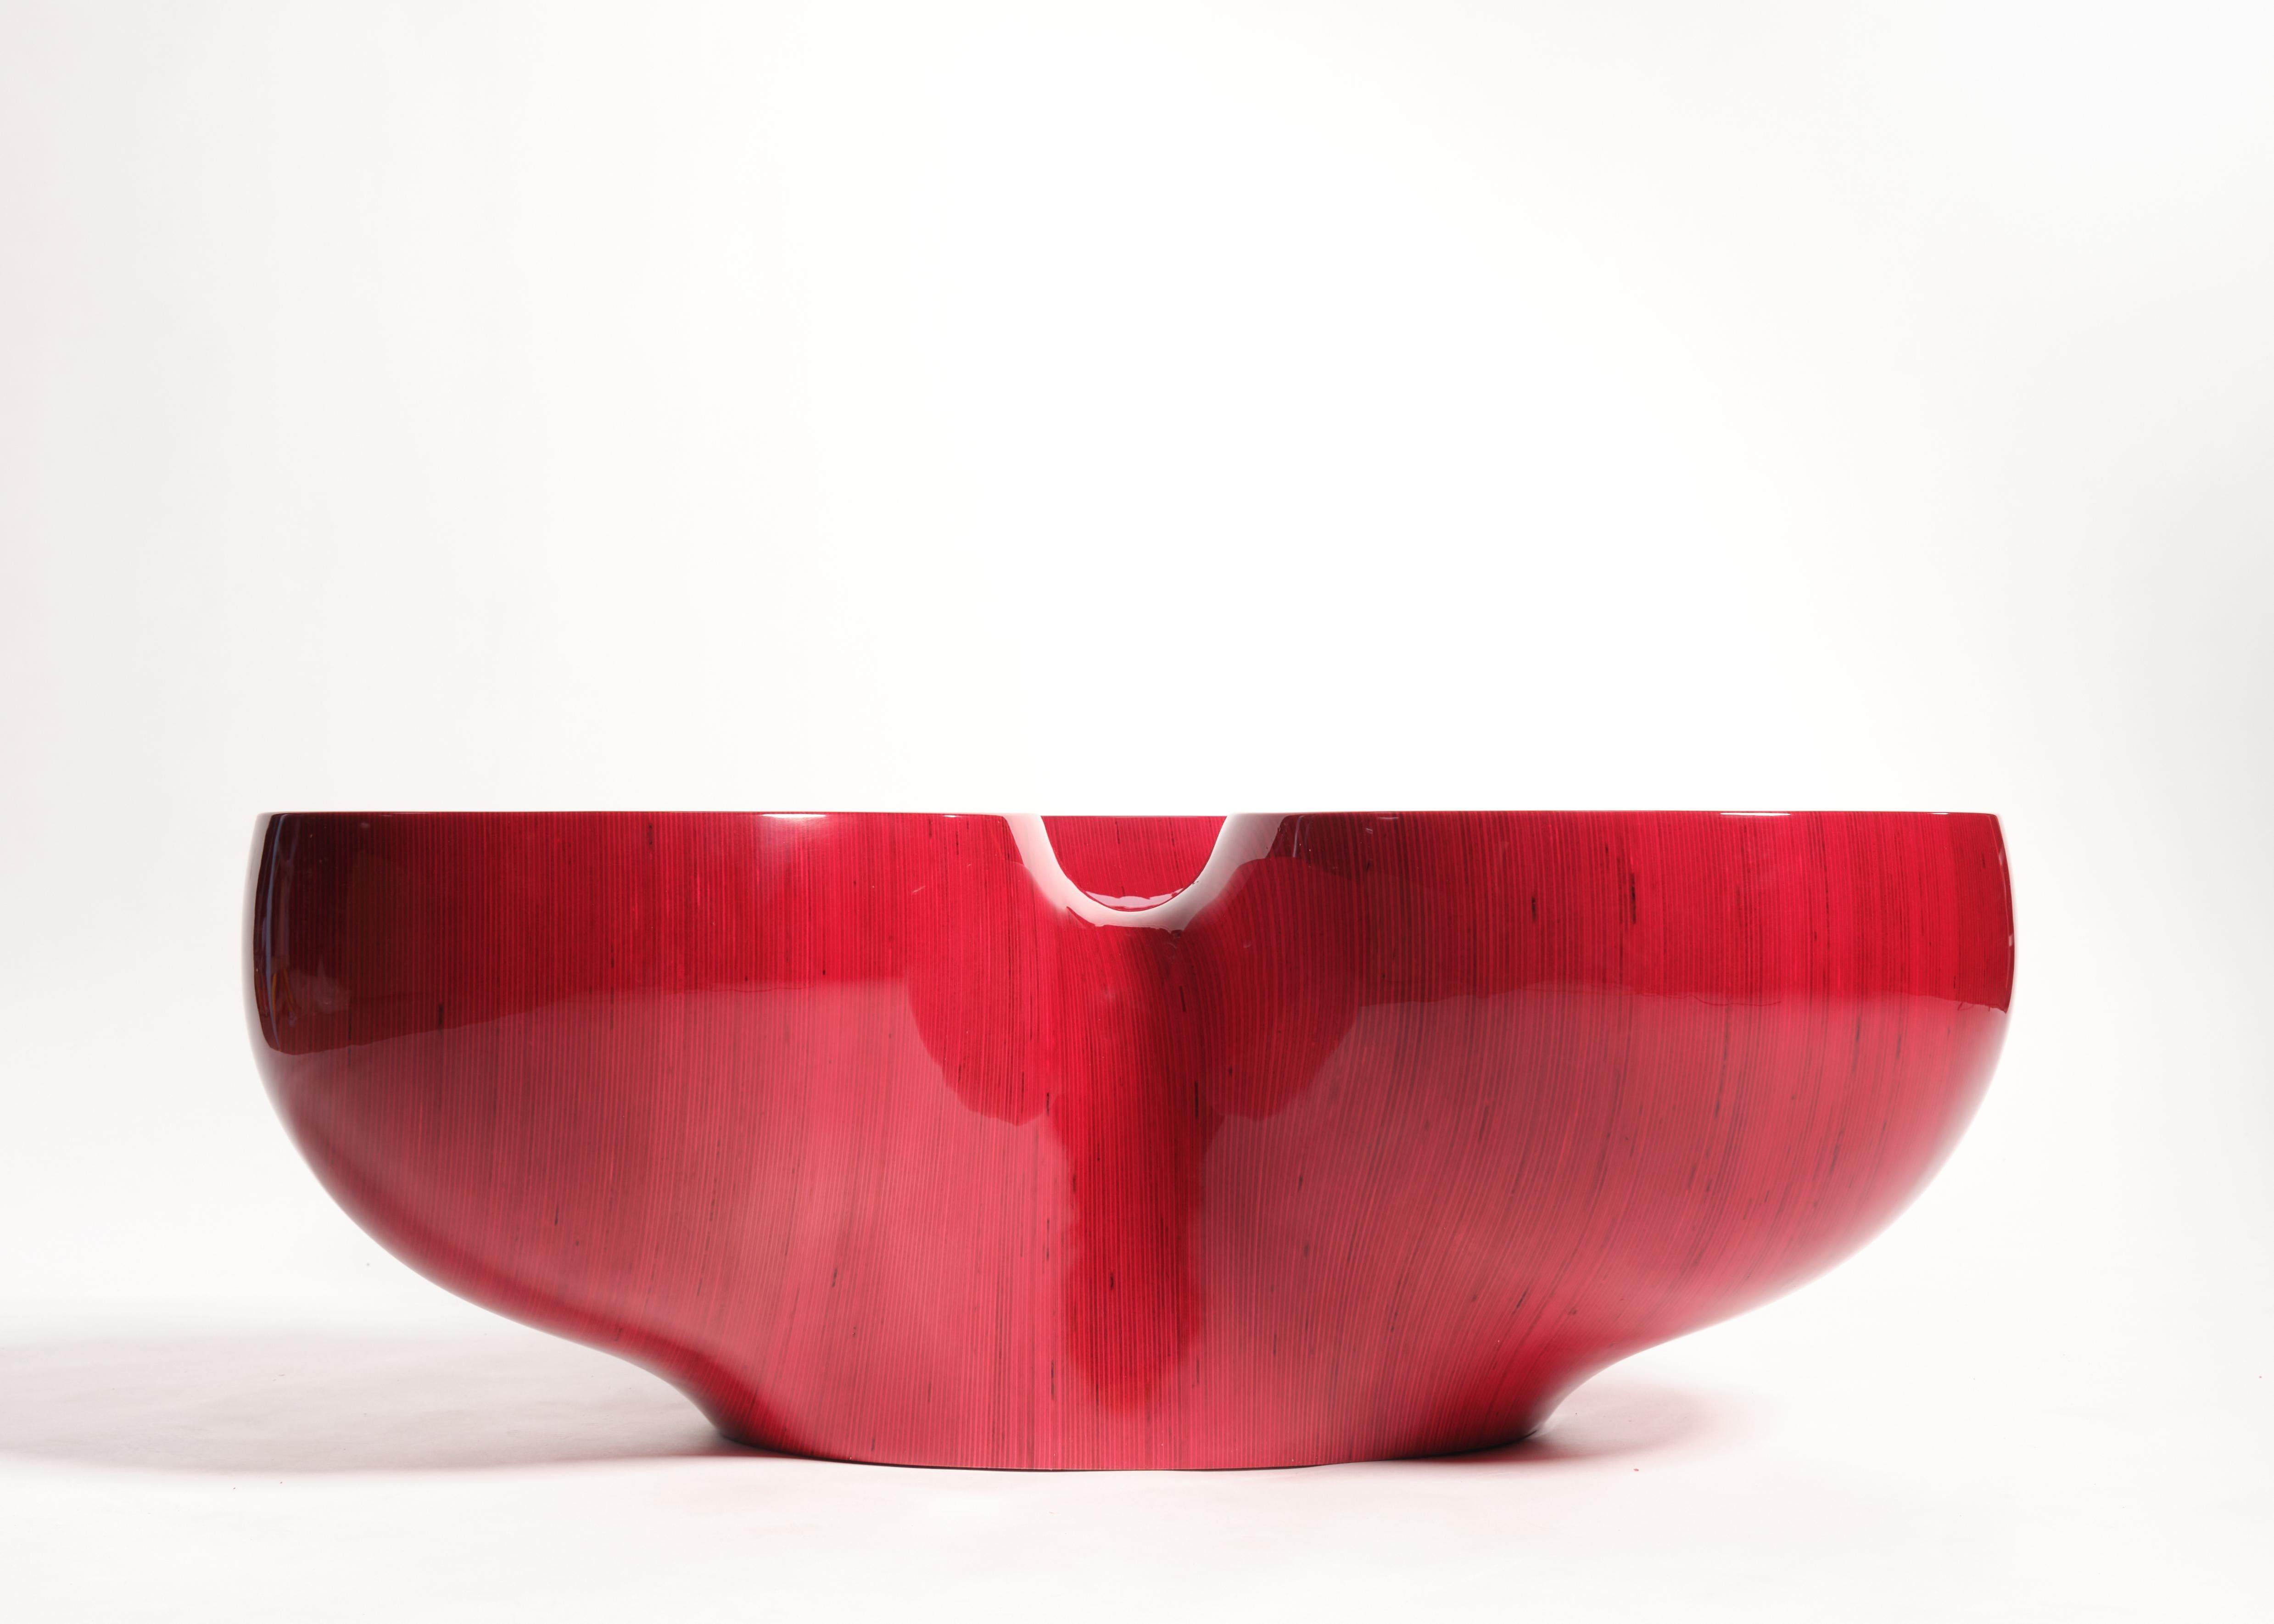 Résine Table basse 7R1PL3 rouge, contreplaqué par Timbur, REP par Tuleste Factory en vente